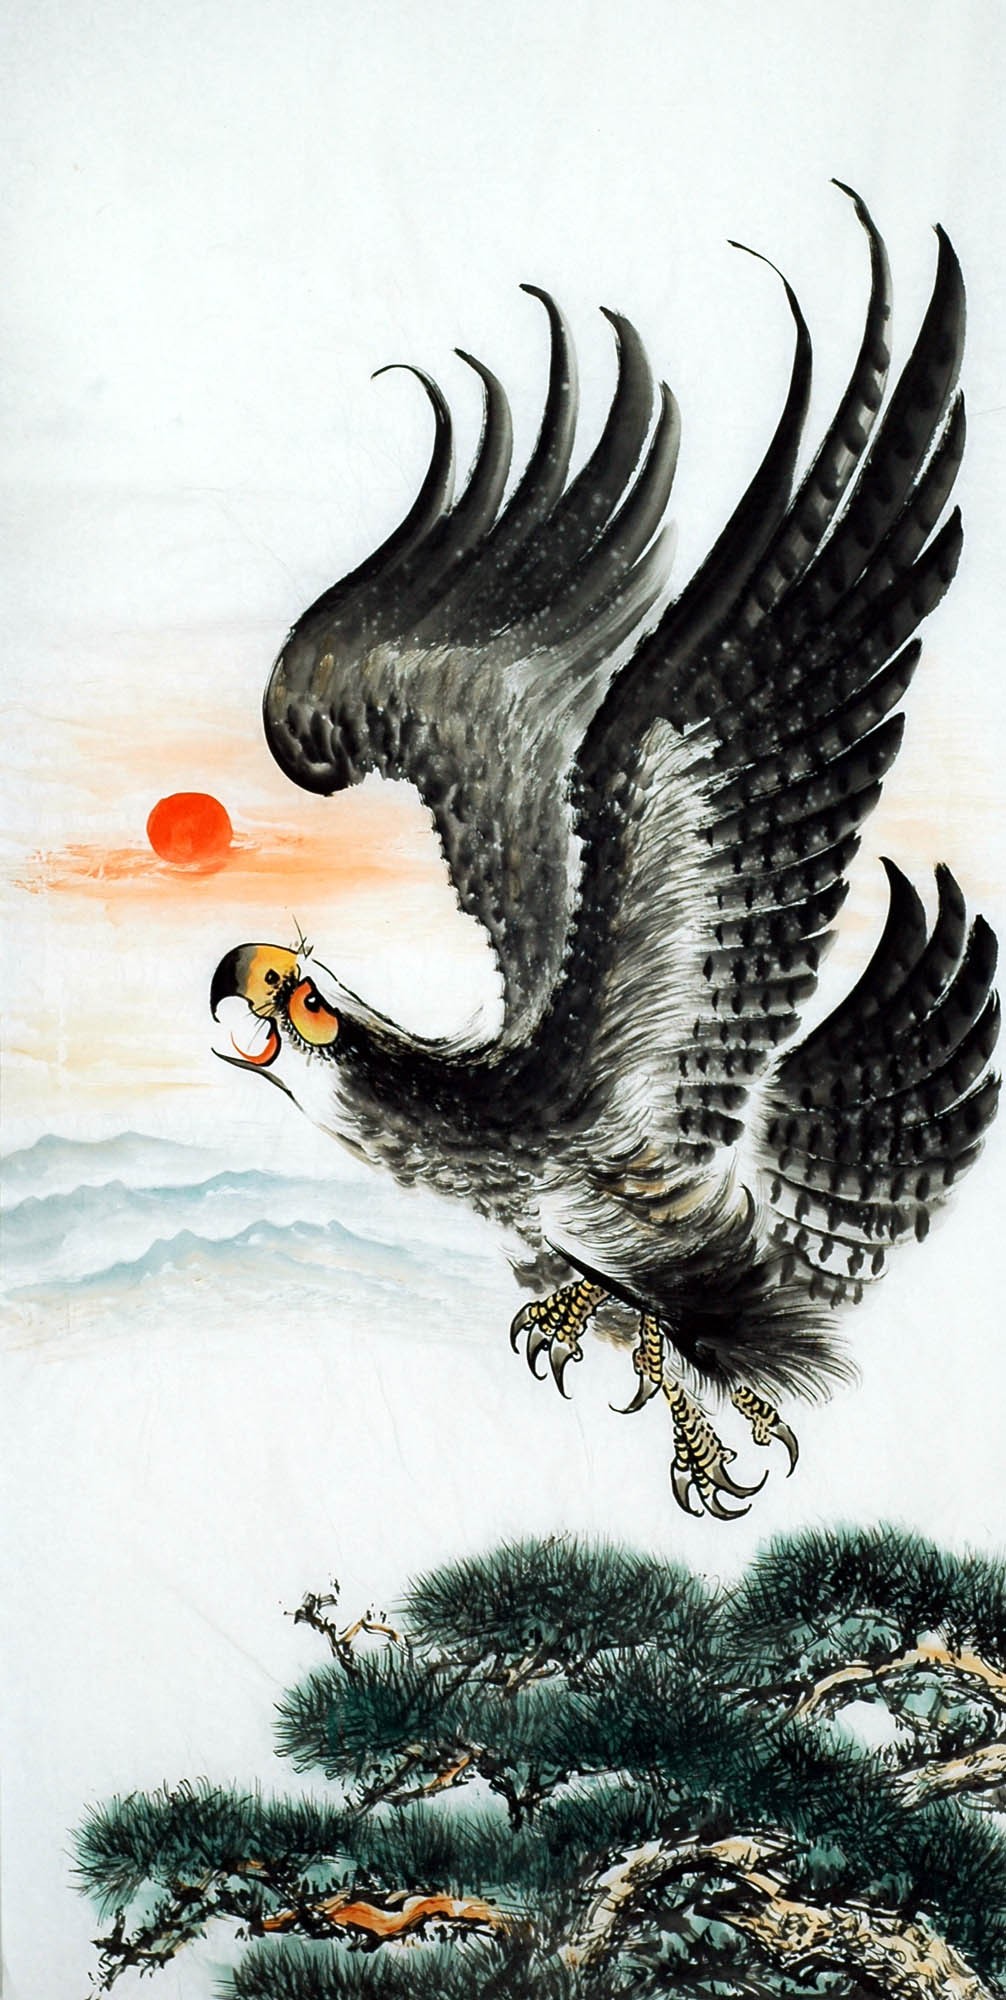 Chinese Eagle Painting - CNAG009717